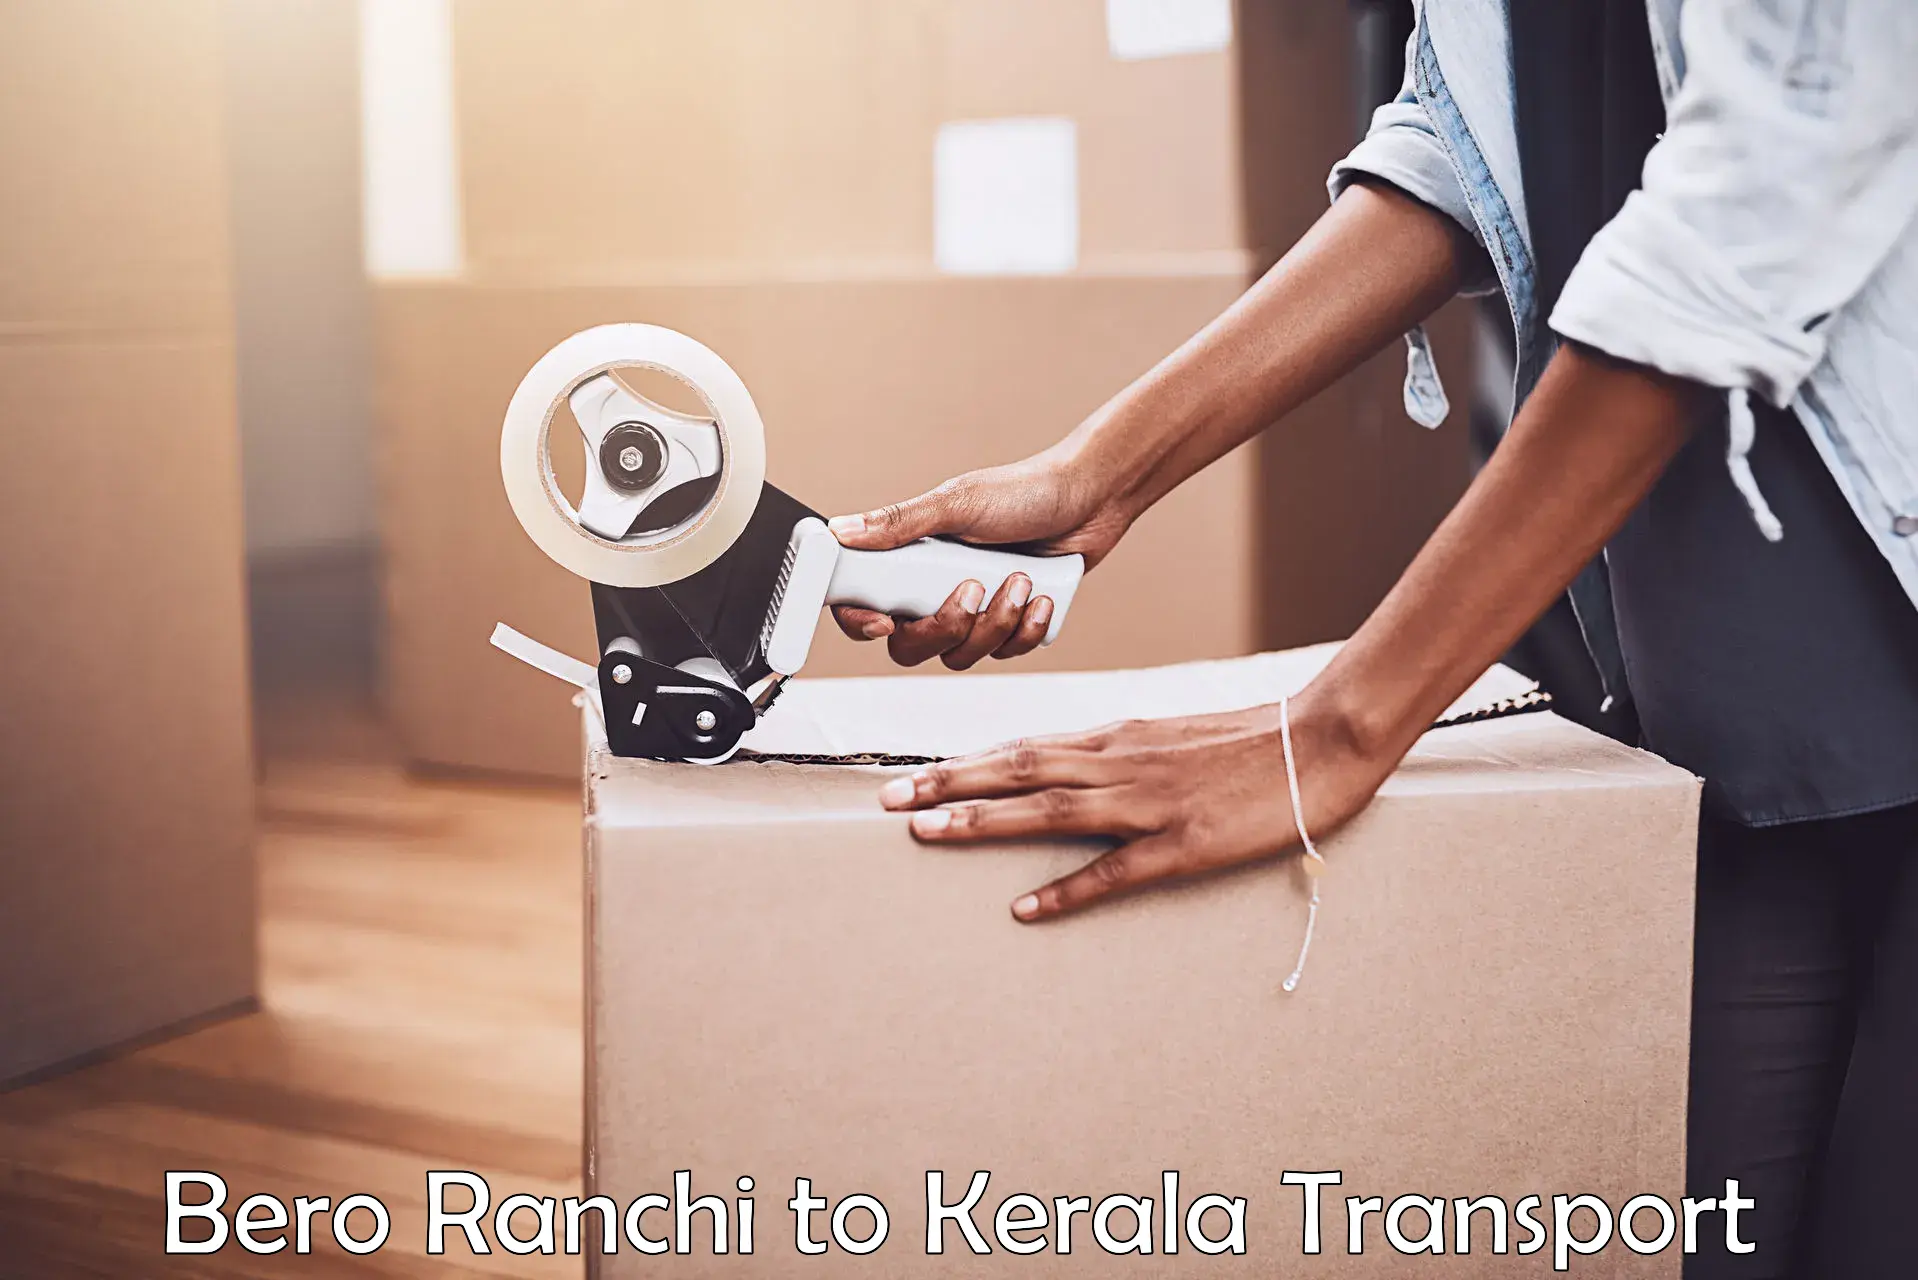 Online transport booking Bero Ranchi to Kerala